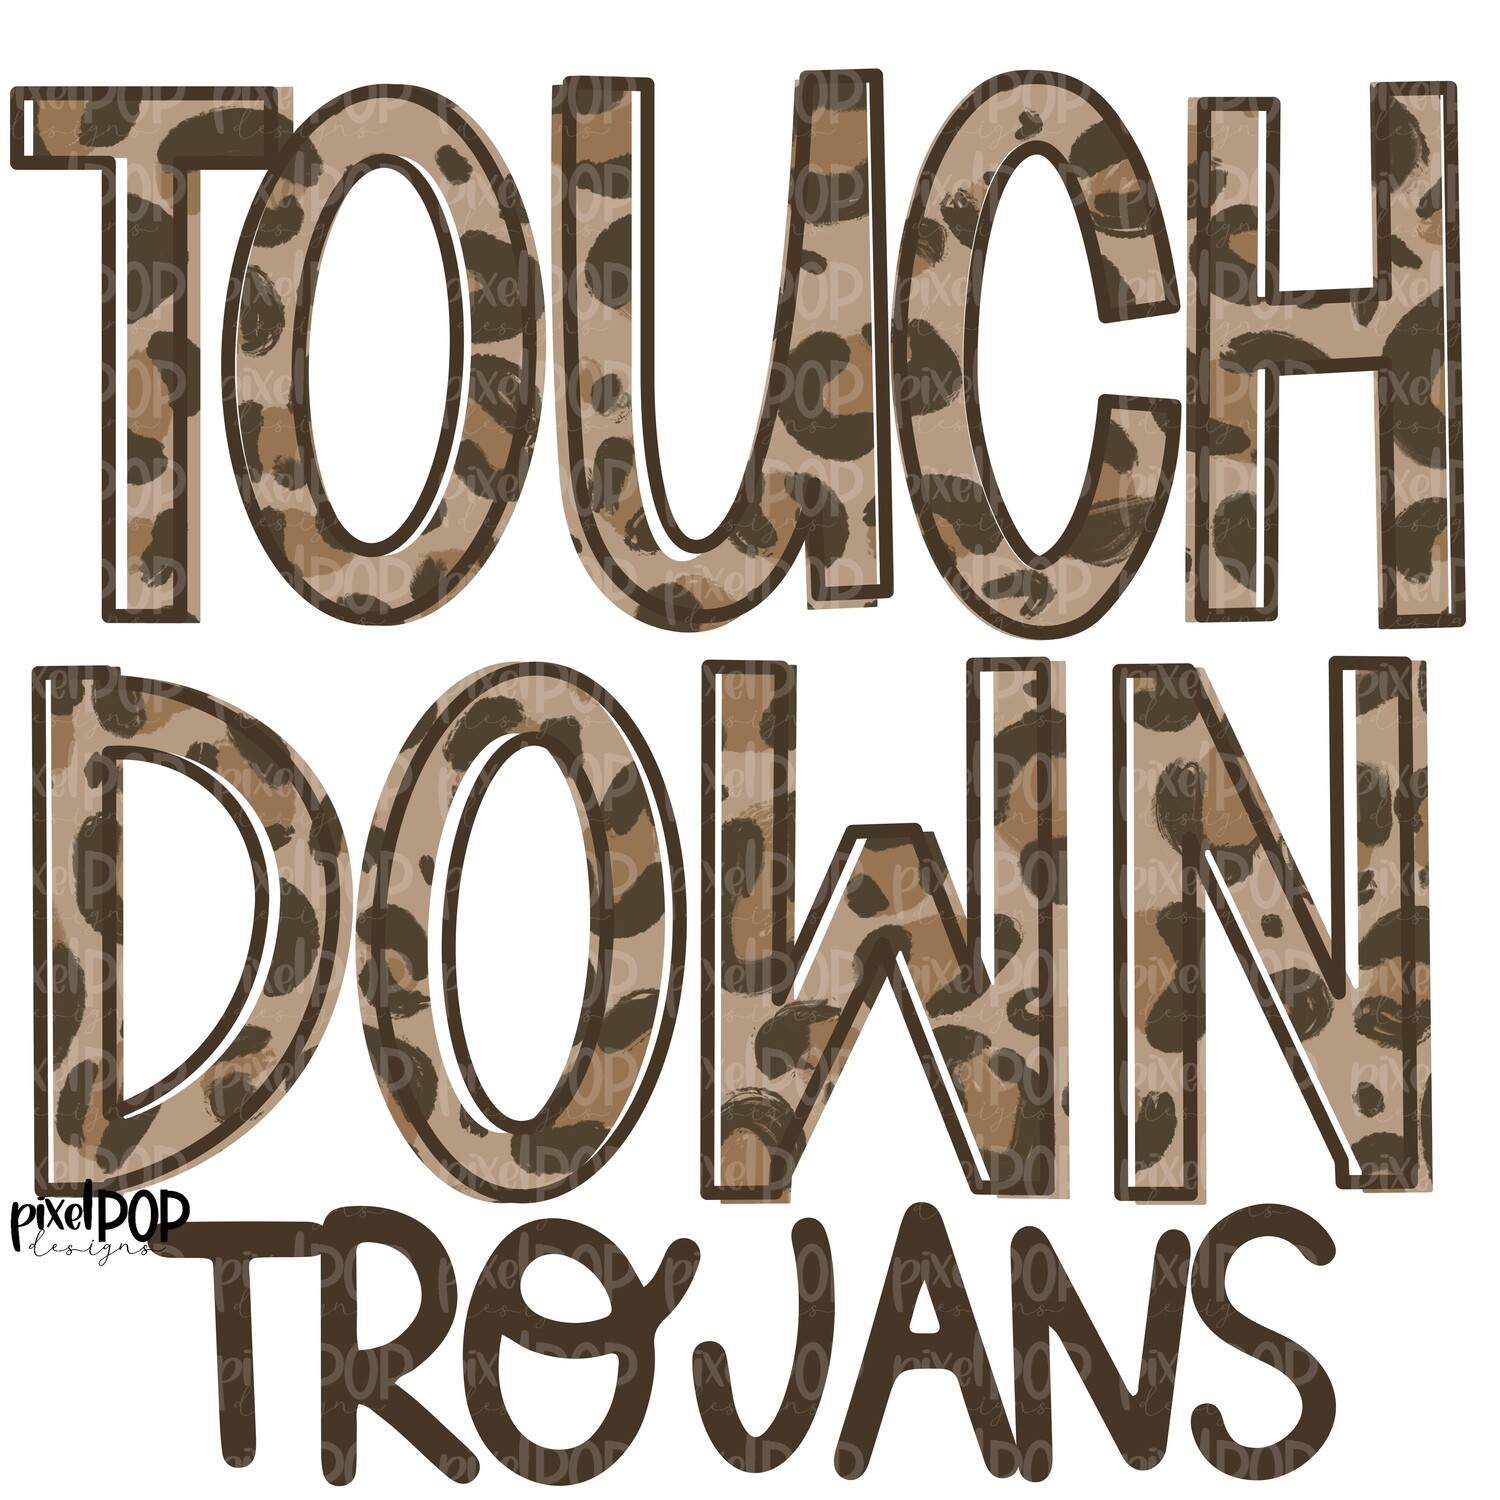 Trojans Touchdown Leopard Print Mascot PNG | Trojans Sublimation Design | Team Spirit Design | Trojans Clip Art | Digital Download | Printable Artwork | Sports Art